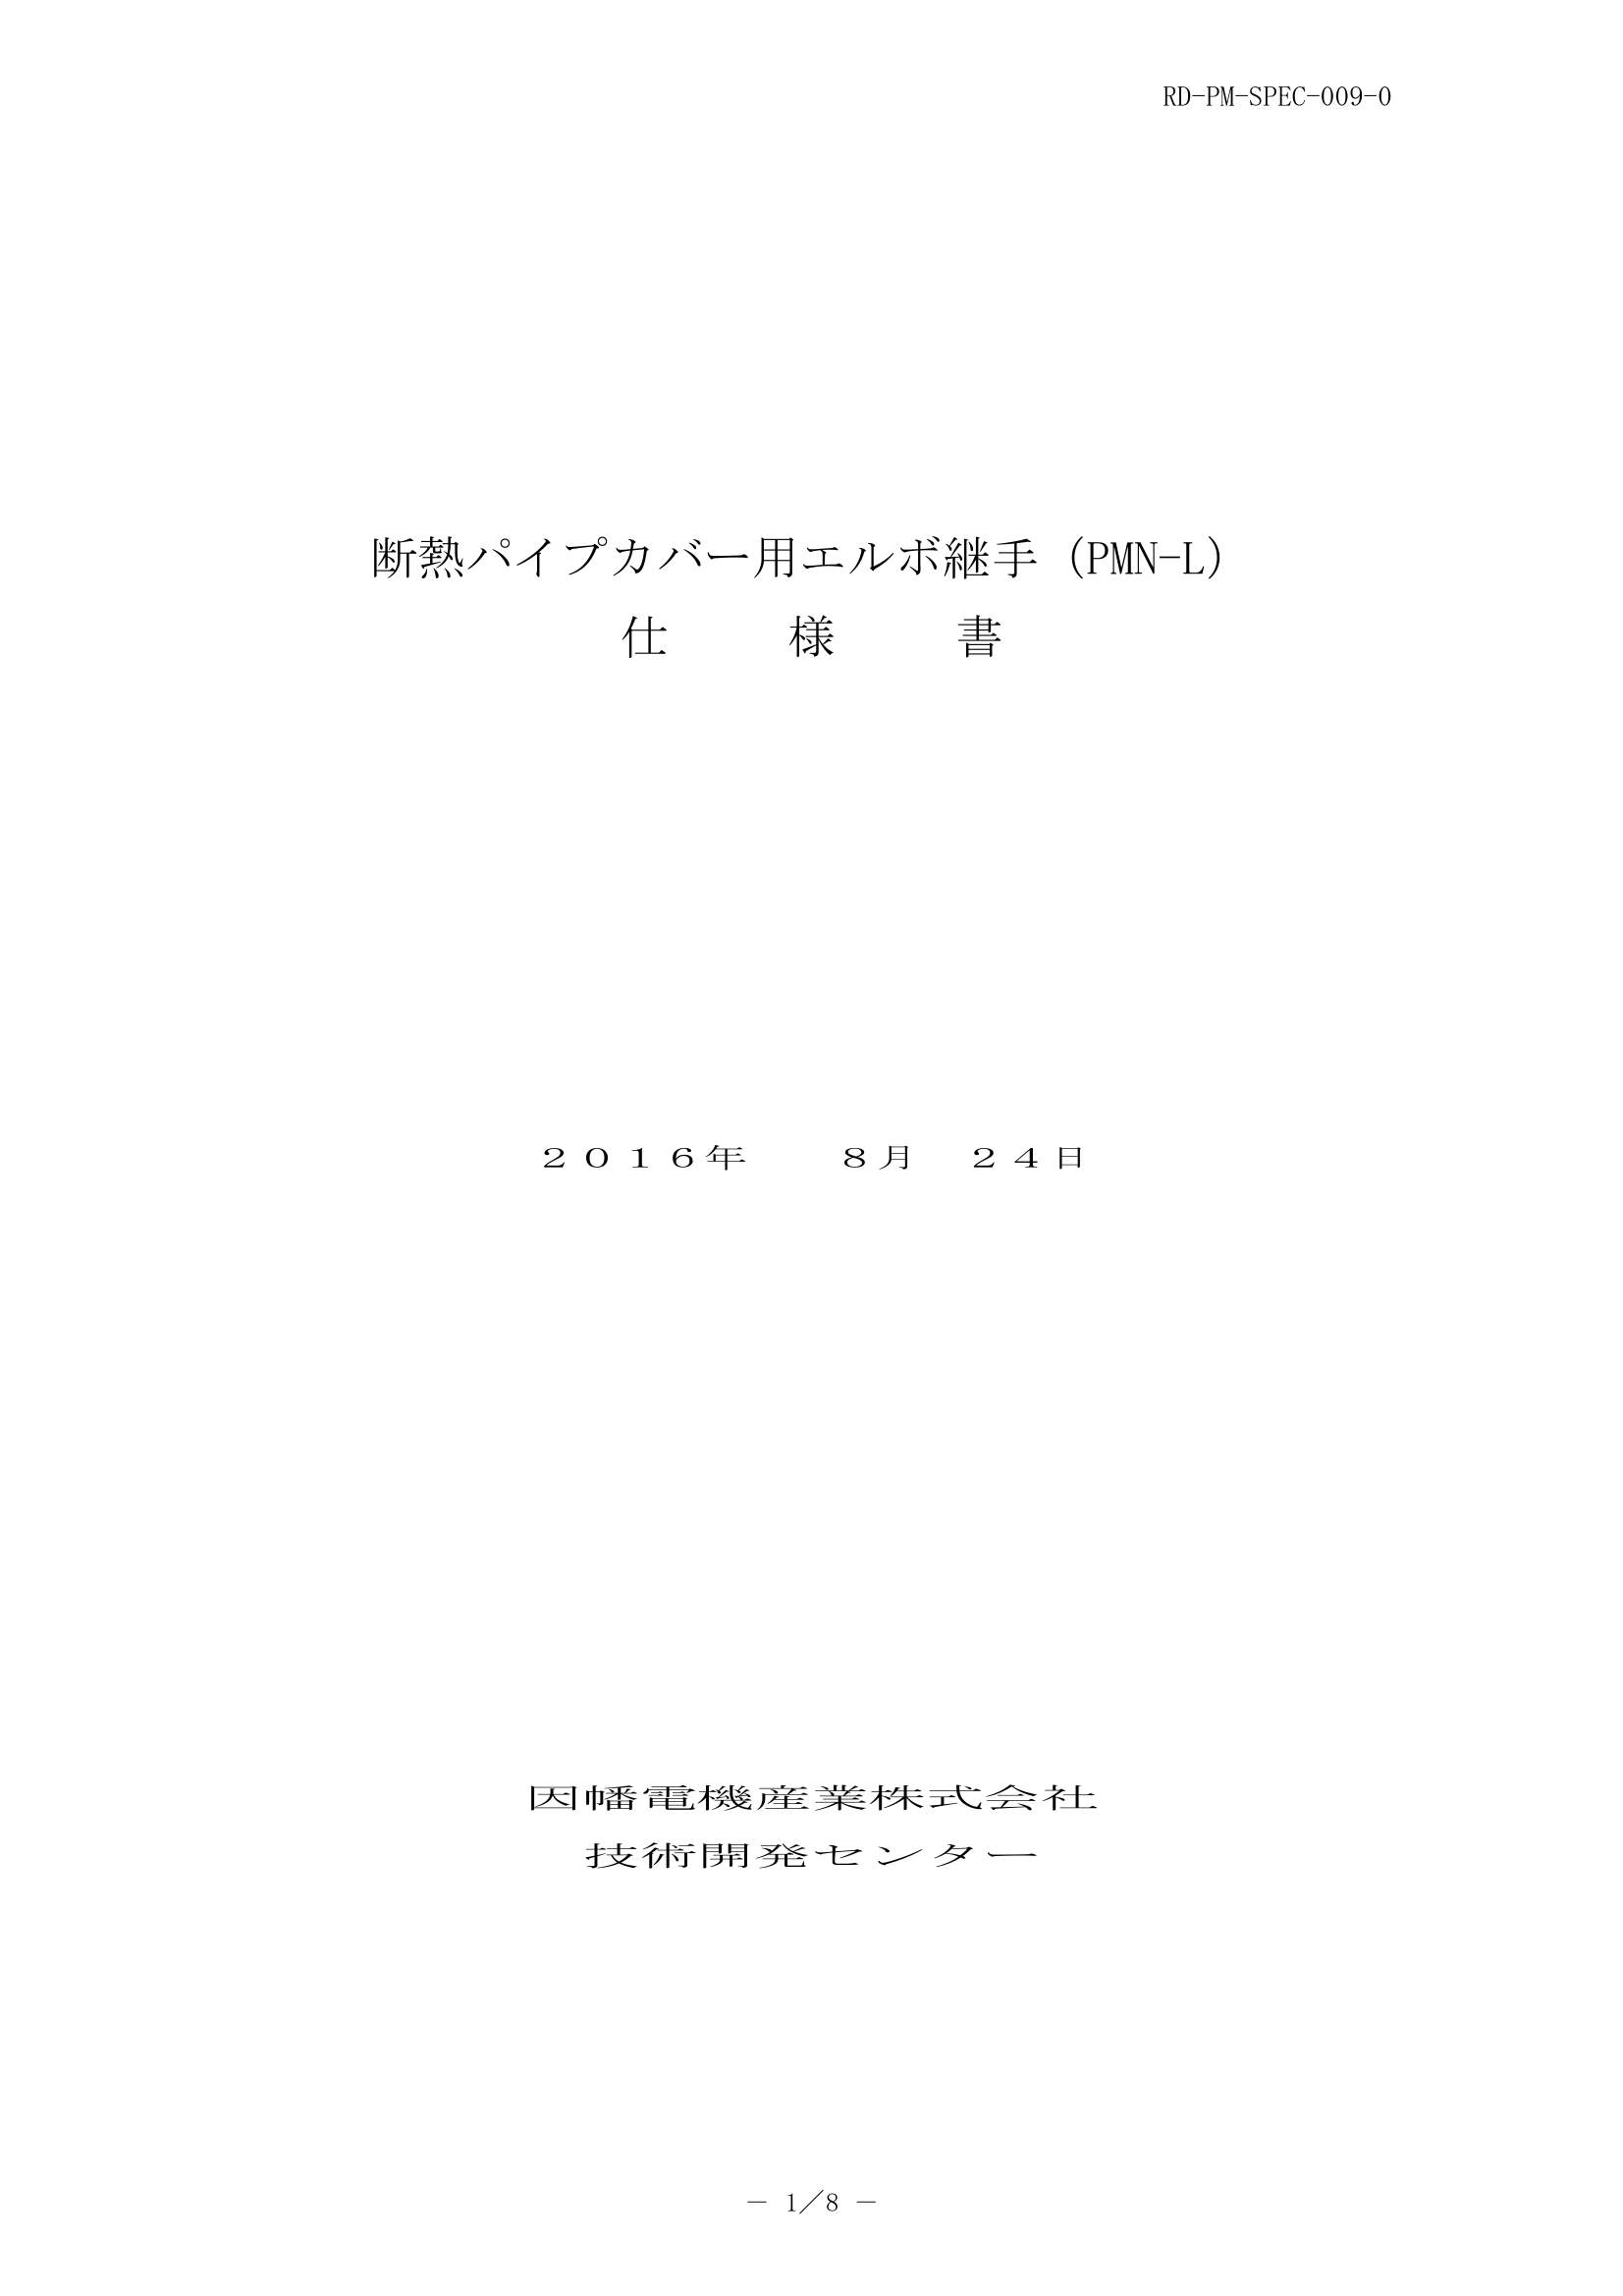 PMNL_仕様書_20160824-0W.pdf